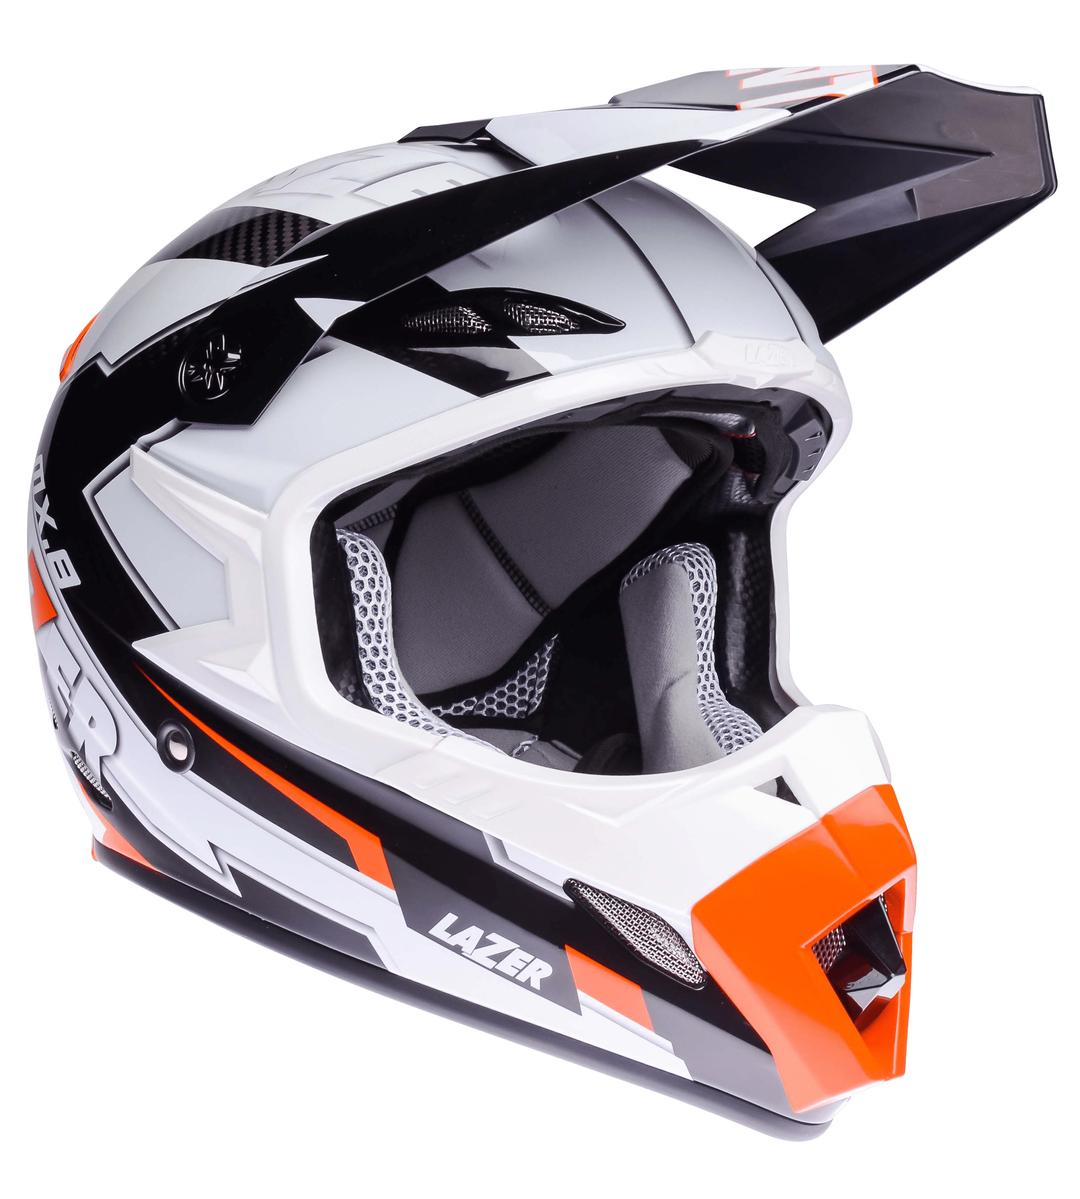 Motorcycle Helmet Lazer MX8 Geotech PC Black Carbon White Orange png transparent